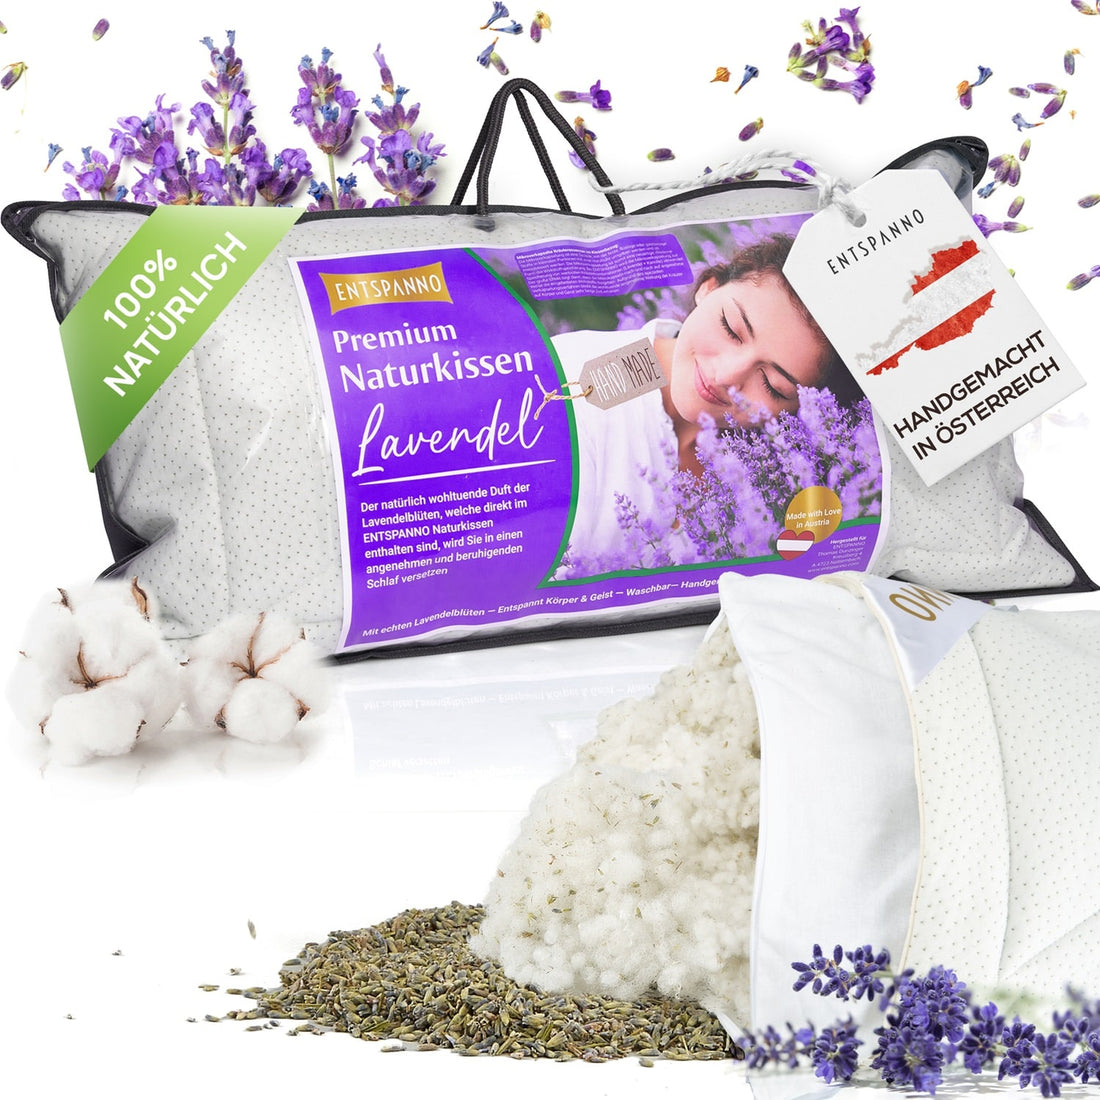 Premium Naturkissen Lavendel